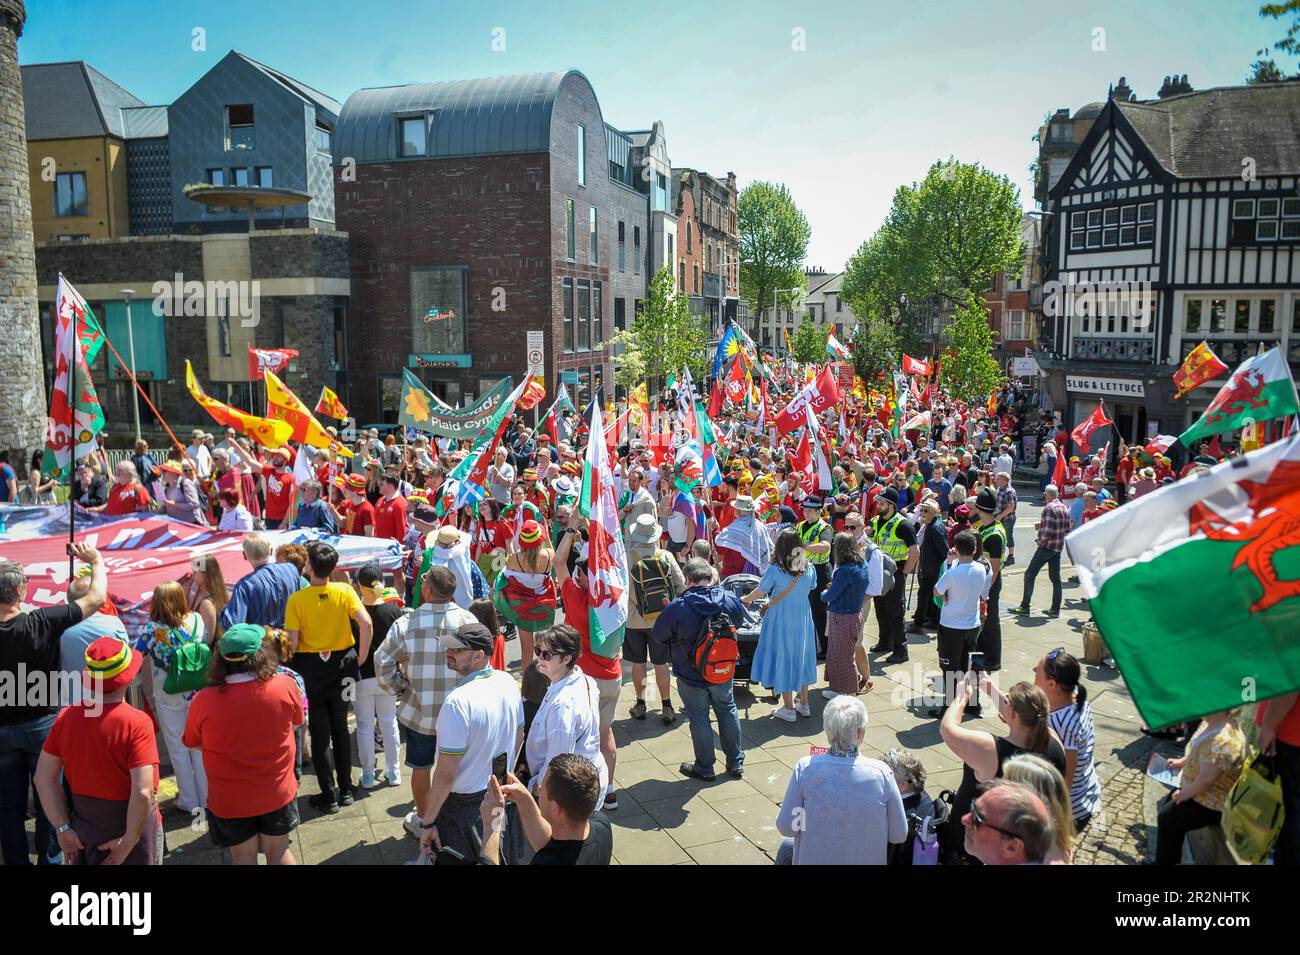 Tausende von Menschen gingen am Samstag auf die Straßen von Swansea, um an einem marsch teilzunehmen, der die walisische Unabhängigkeit forderte. Schätzungsweise 5000 Menschen nahmen an der Veranstaltung in Wales' zweiter Stadt Teil, die von den für die Unabhängigkeit eintretenden Gruppen YES Cymru und AUOB (Alle unter einem Banner) Cymru organisiert wurde. Stockfoto